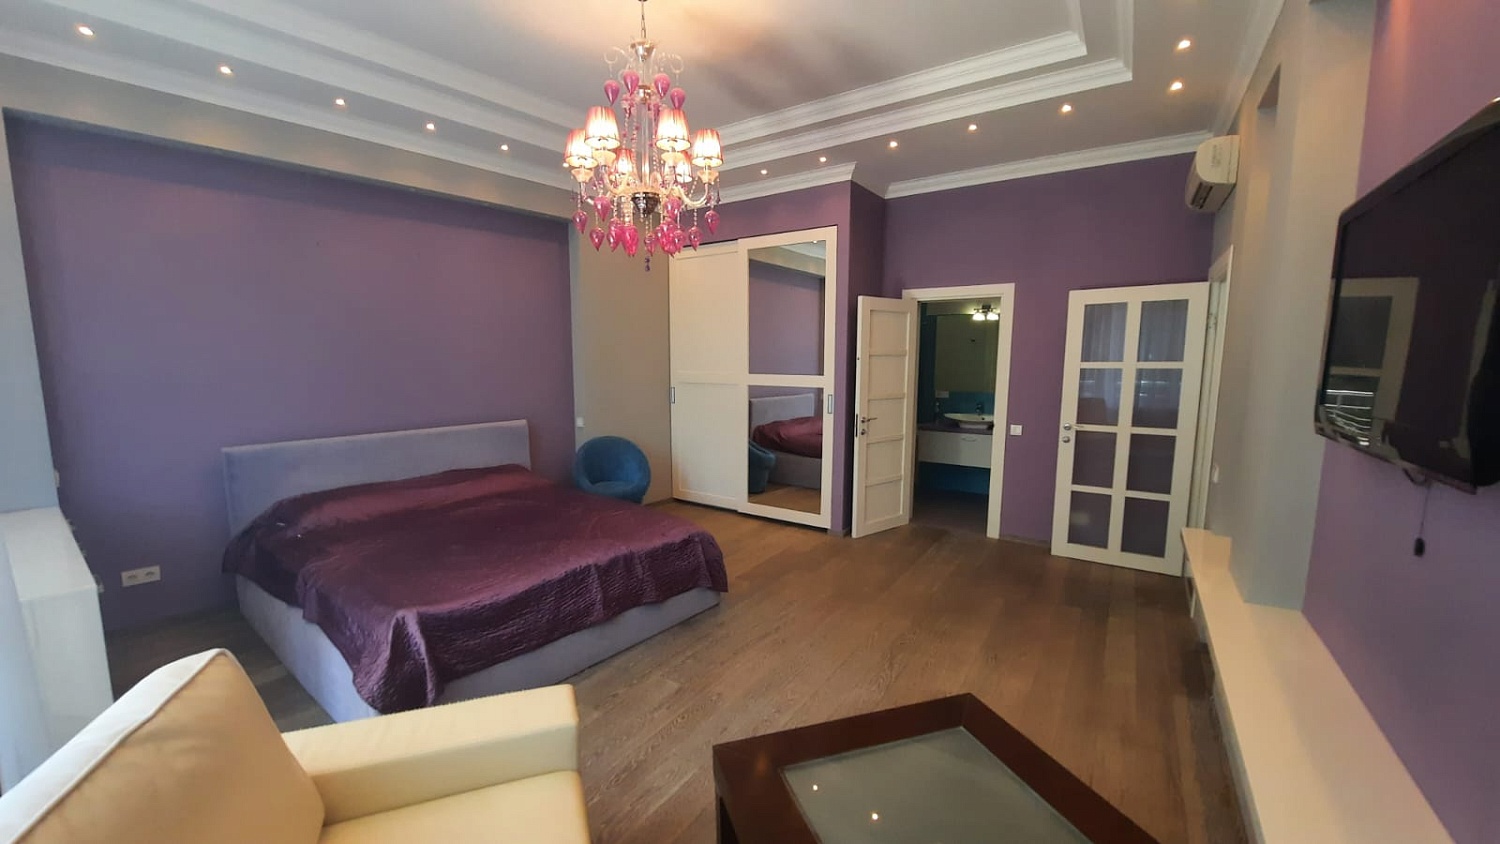 2-х комнатная квартира в Гурзуфе в жилом комплексе «Ришелье Шато».